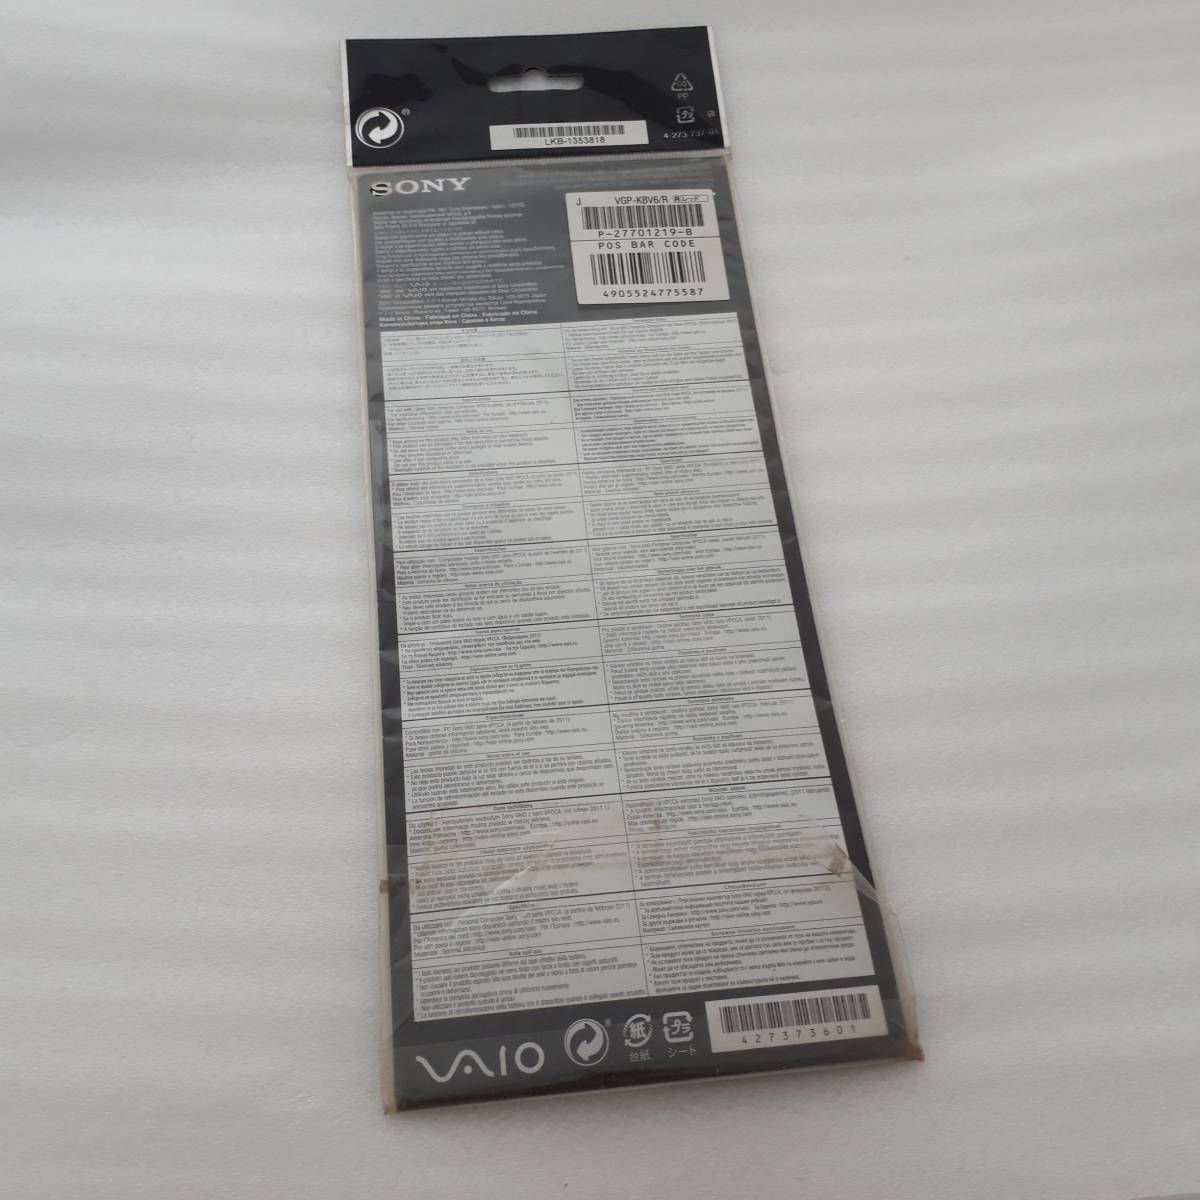 SONY VAIO C/Eシリーズ キーボードウェア VGP-KBV6/R レッド